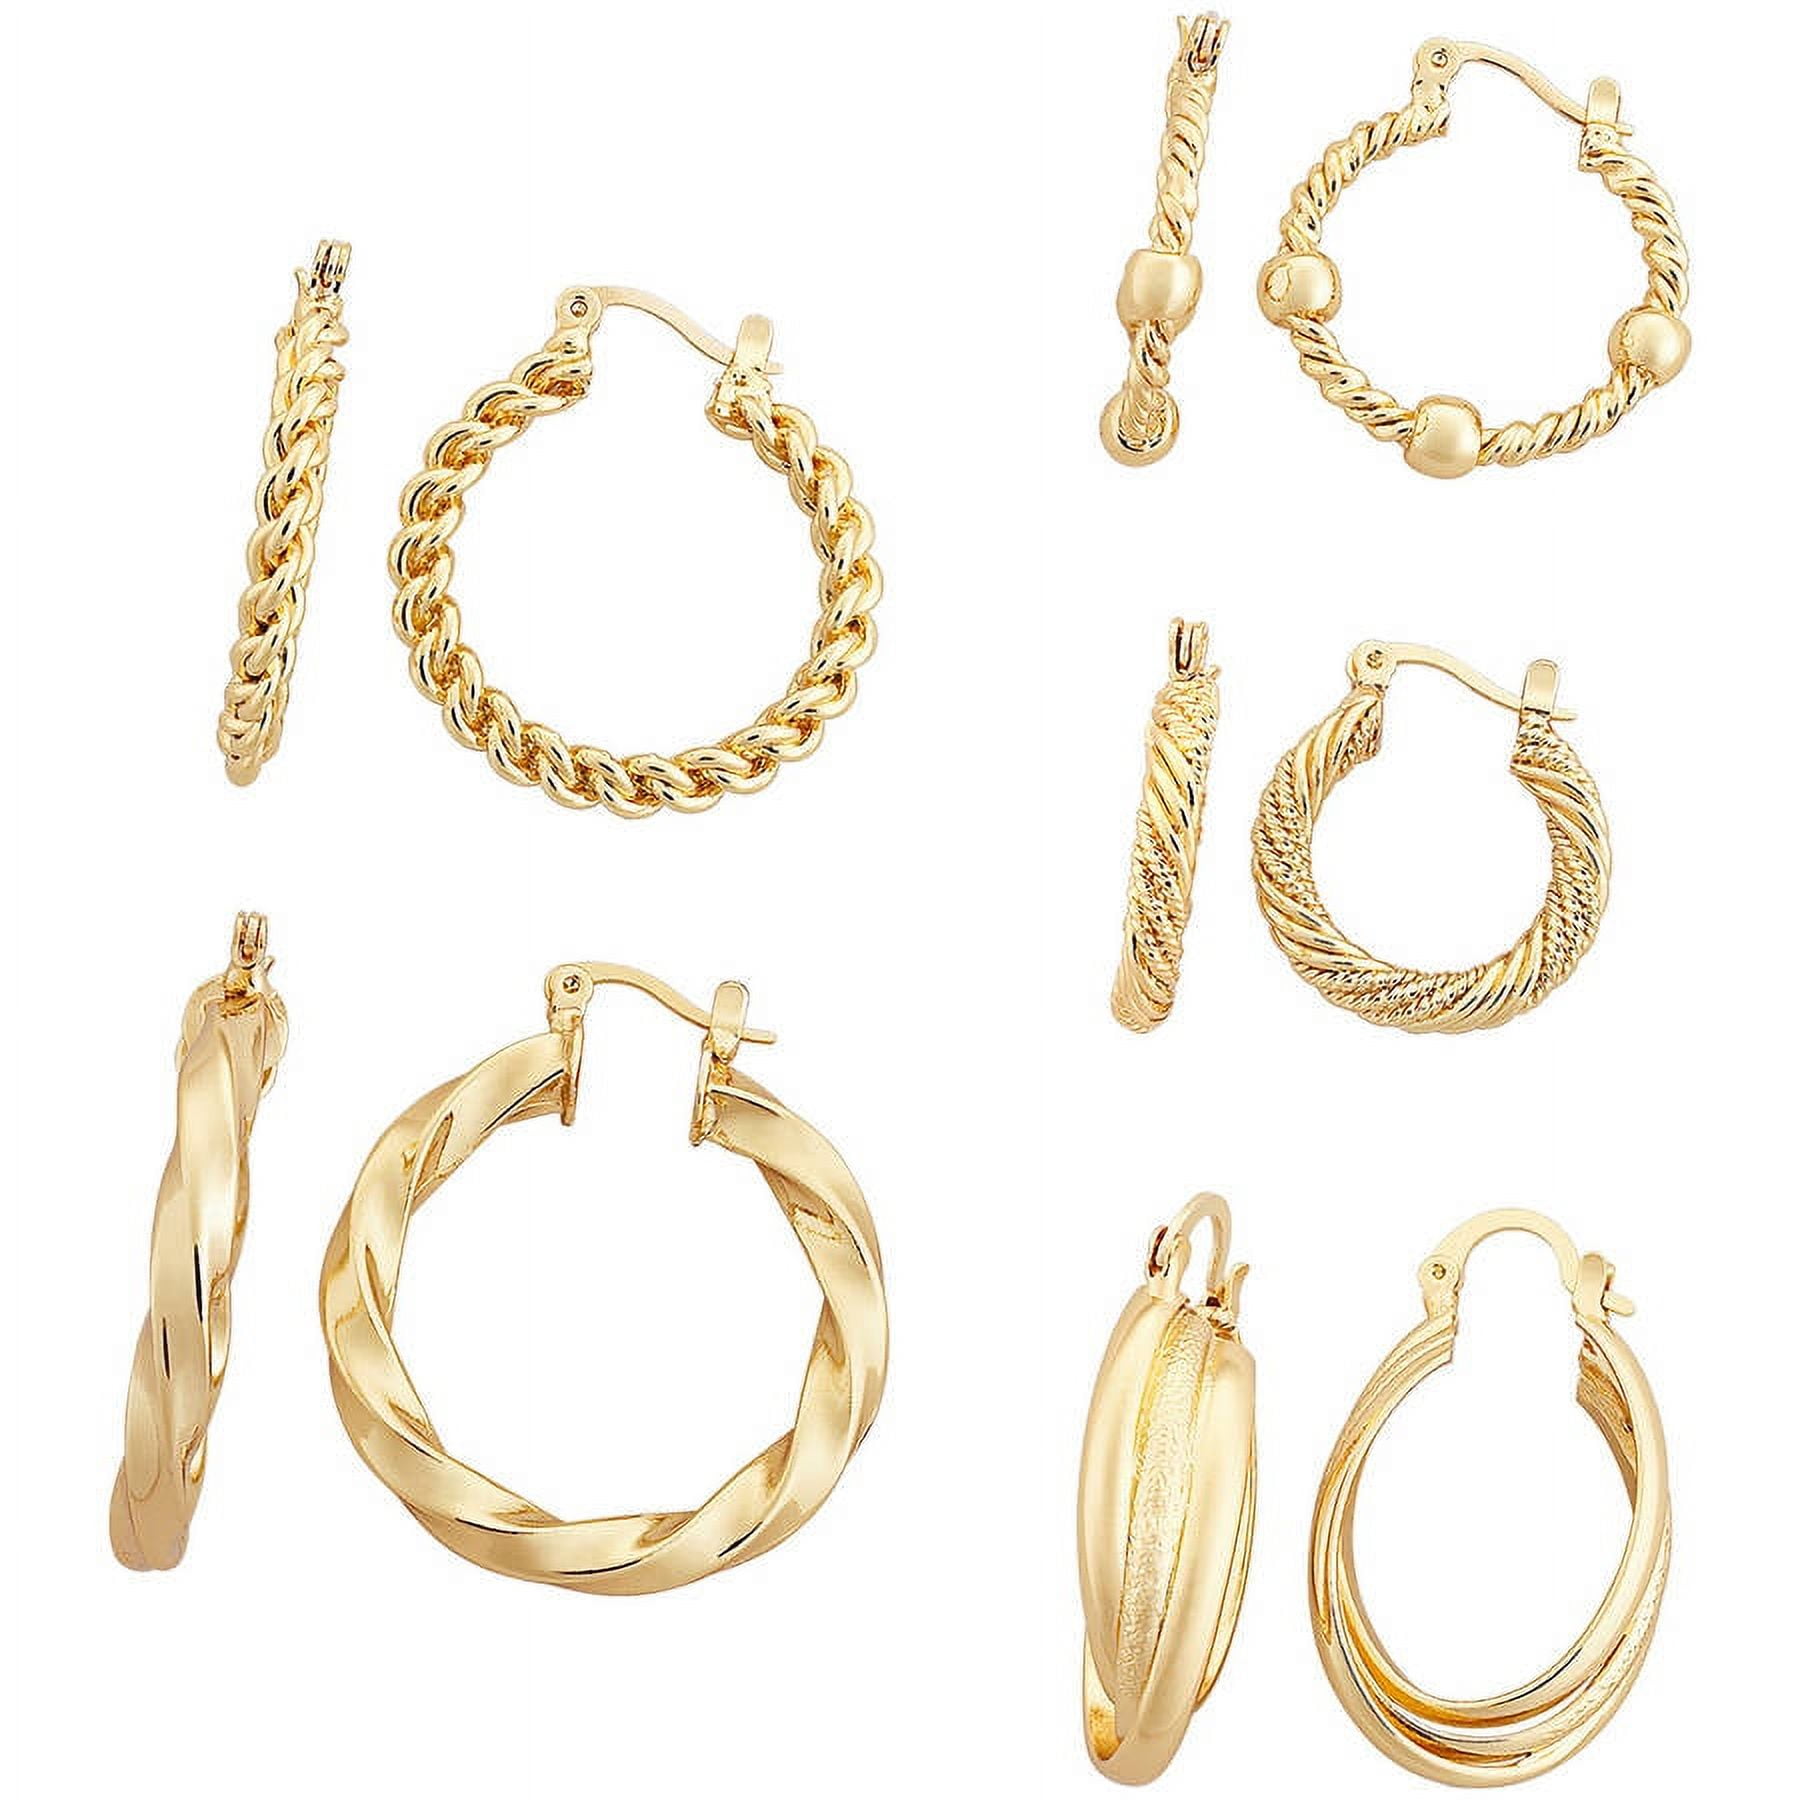 Buy Fancy Golden Hoop Earrings/Girls and Women Earrings/Size 3 cm at  Amazon.in